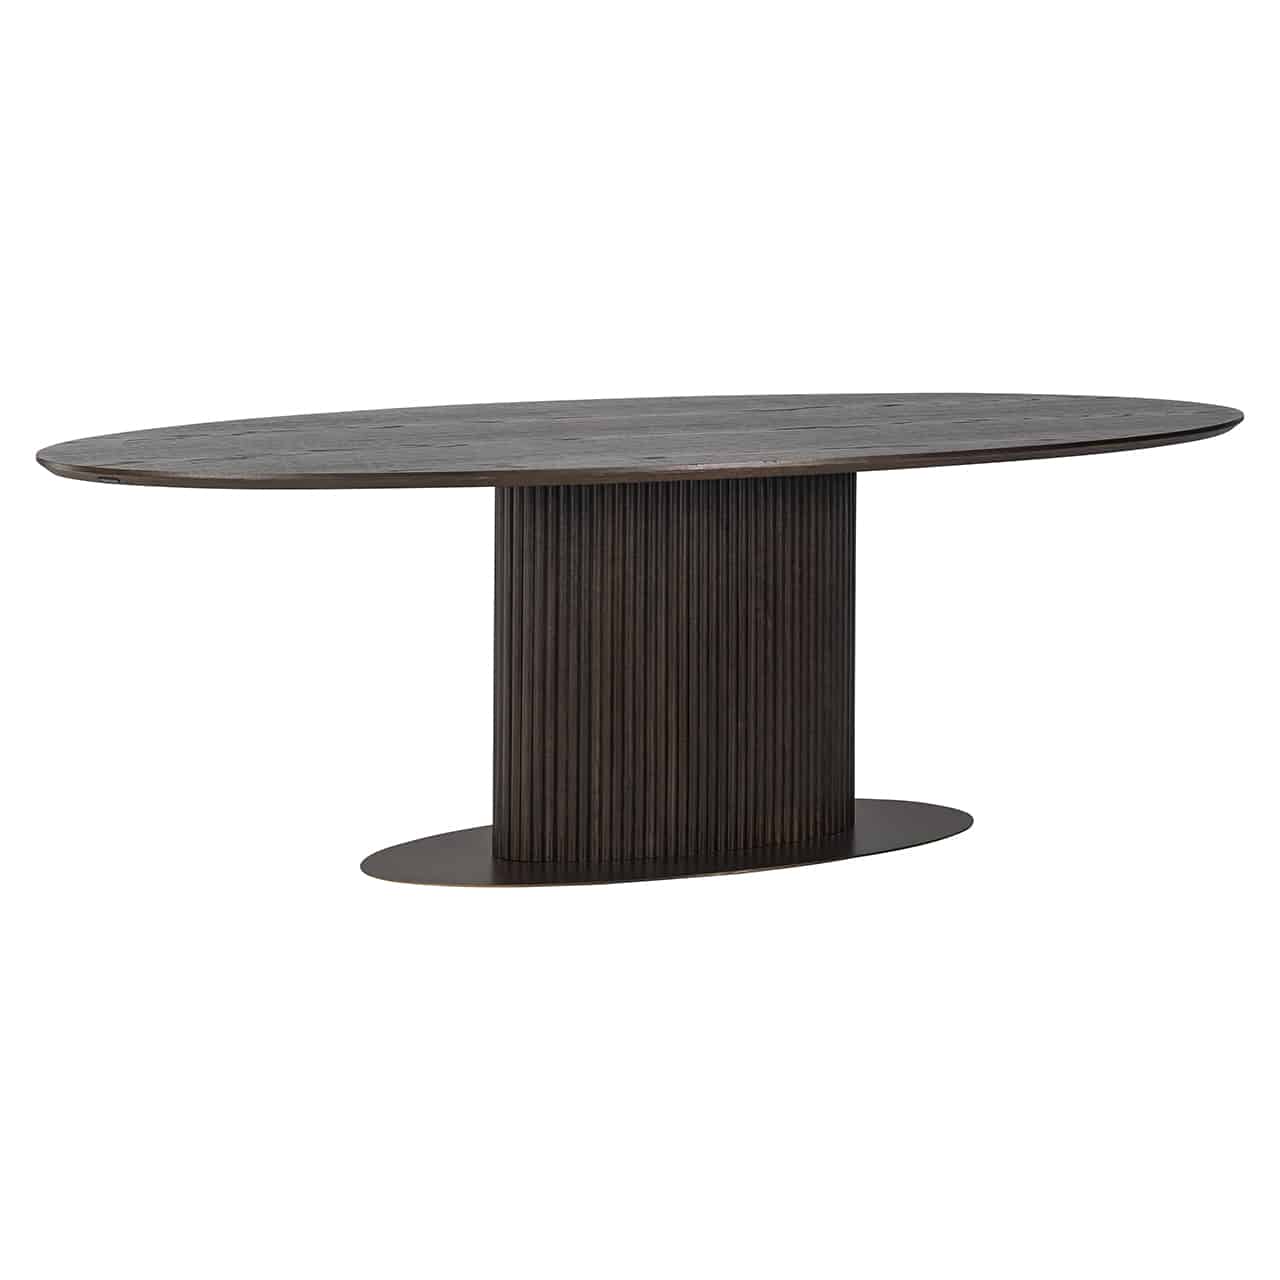 Brauner Esstisch mit einer ovalen Bodenplatte, darauf ein ovaler Sockel mit Längsrillen und einer großen, ebenfalls ovalen Tischplatte.